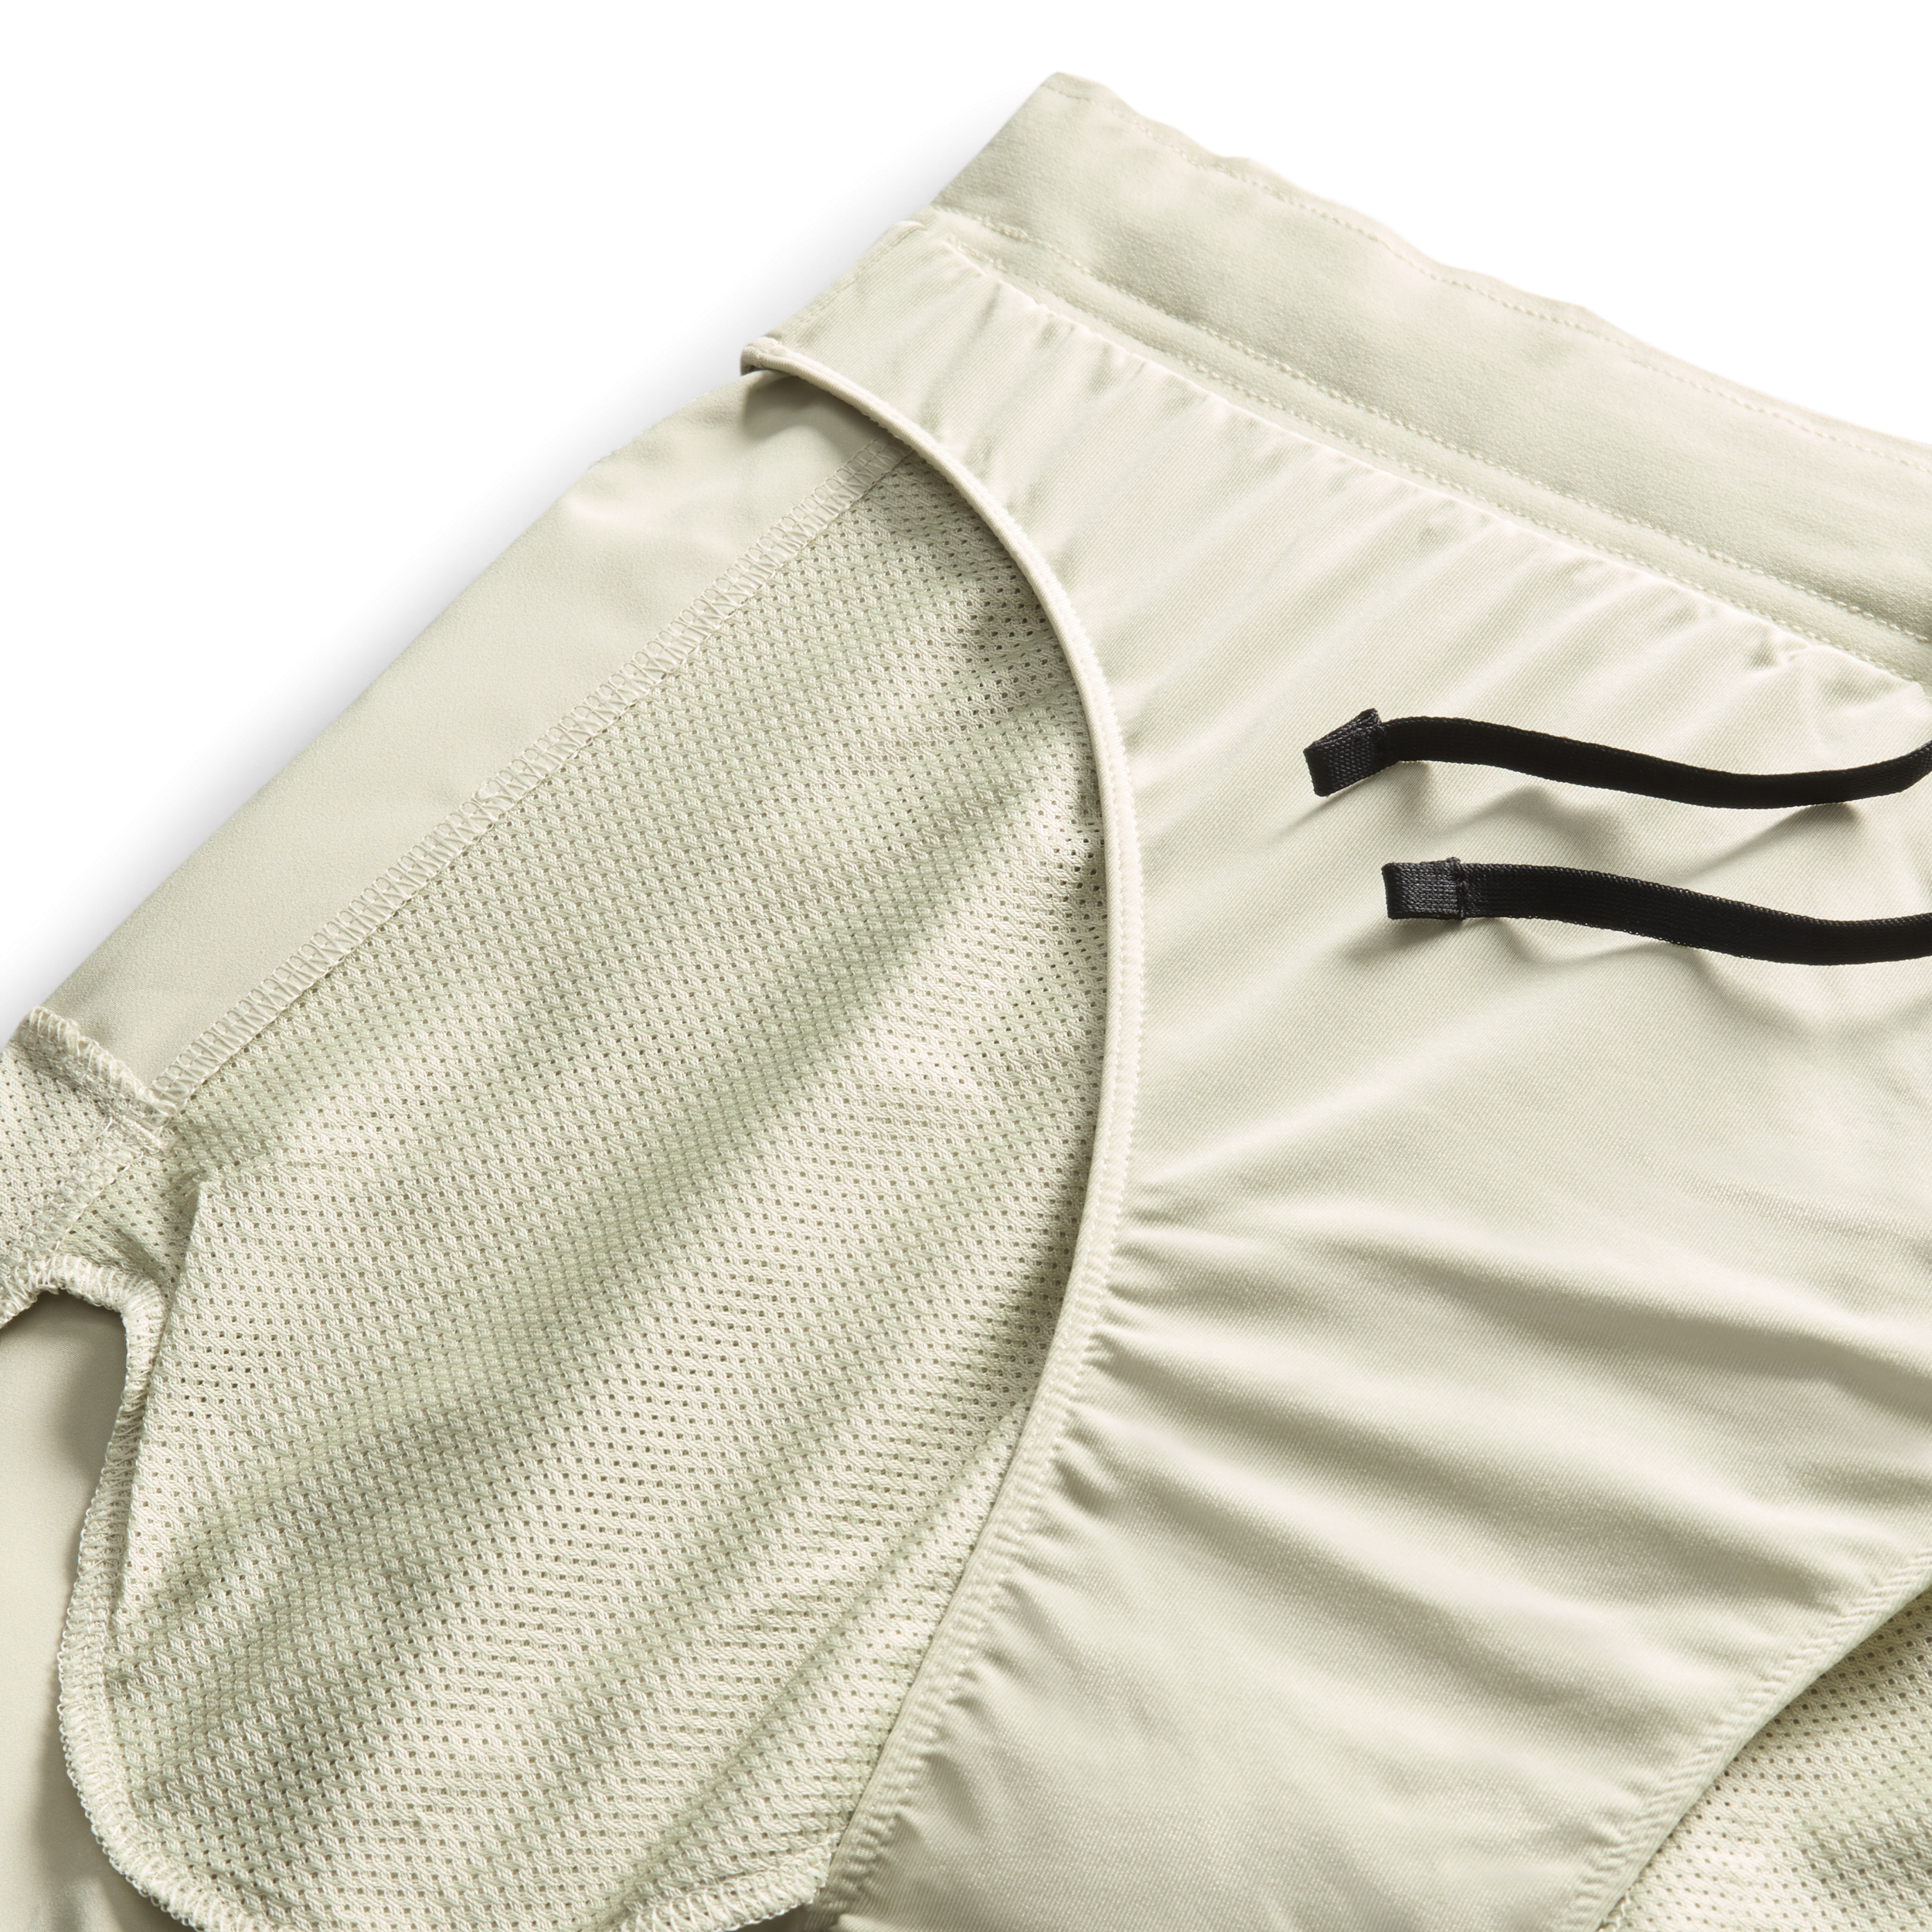 Nike Challenger Dri-FIT hardloopshorts met binnenbroek voor heren (13 cm) Groen